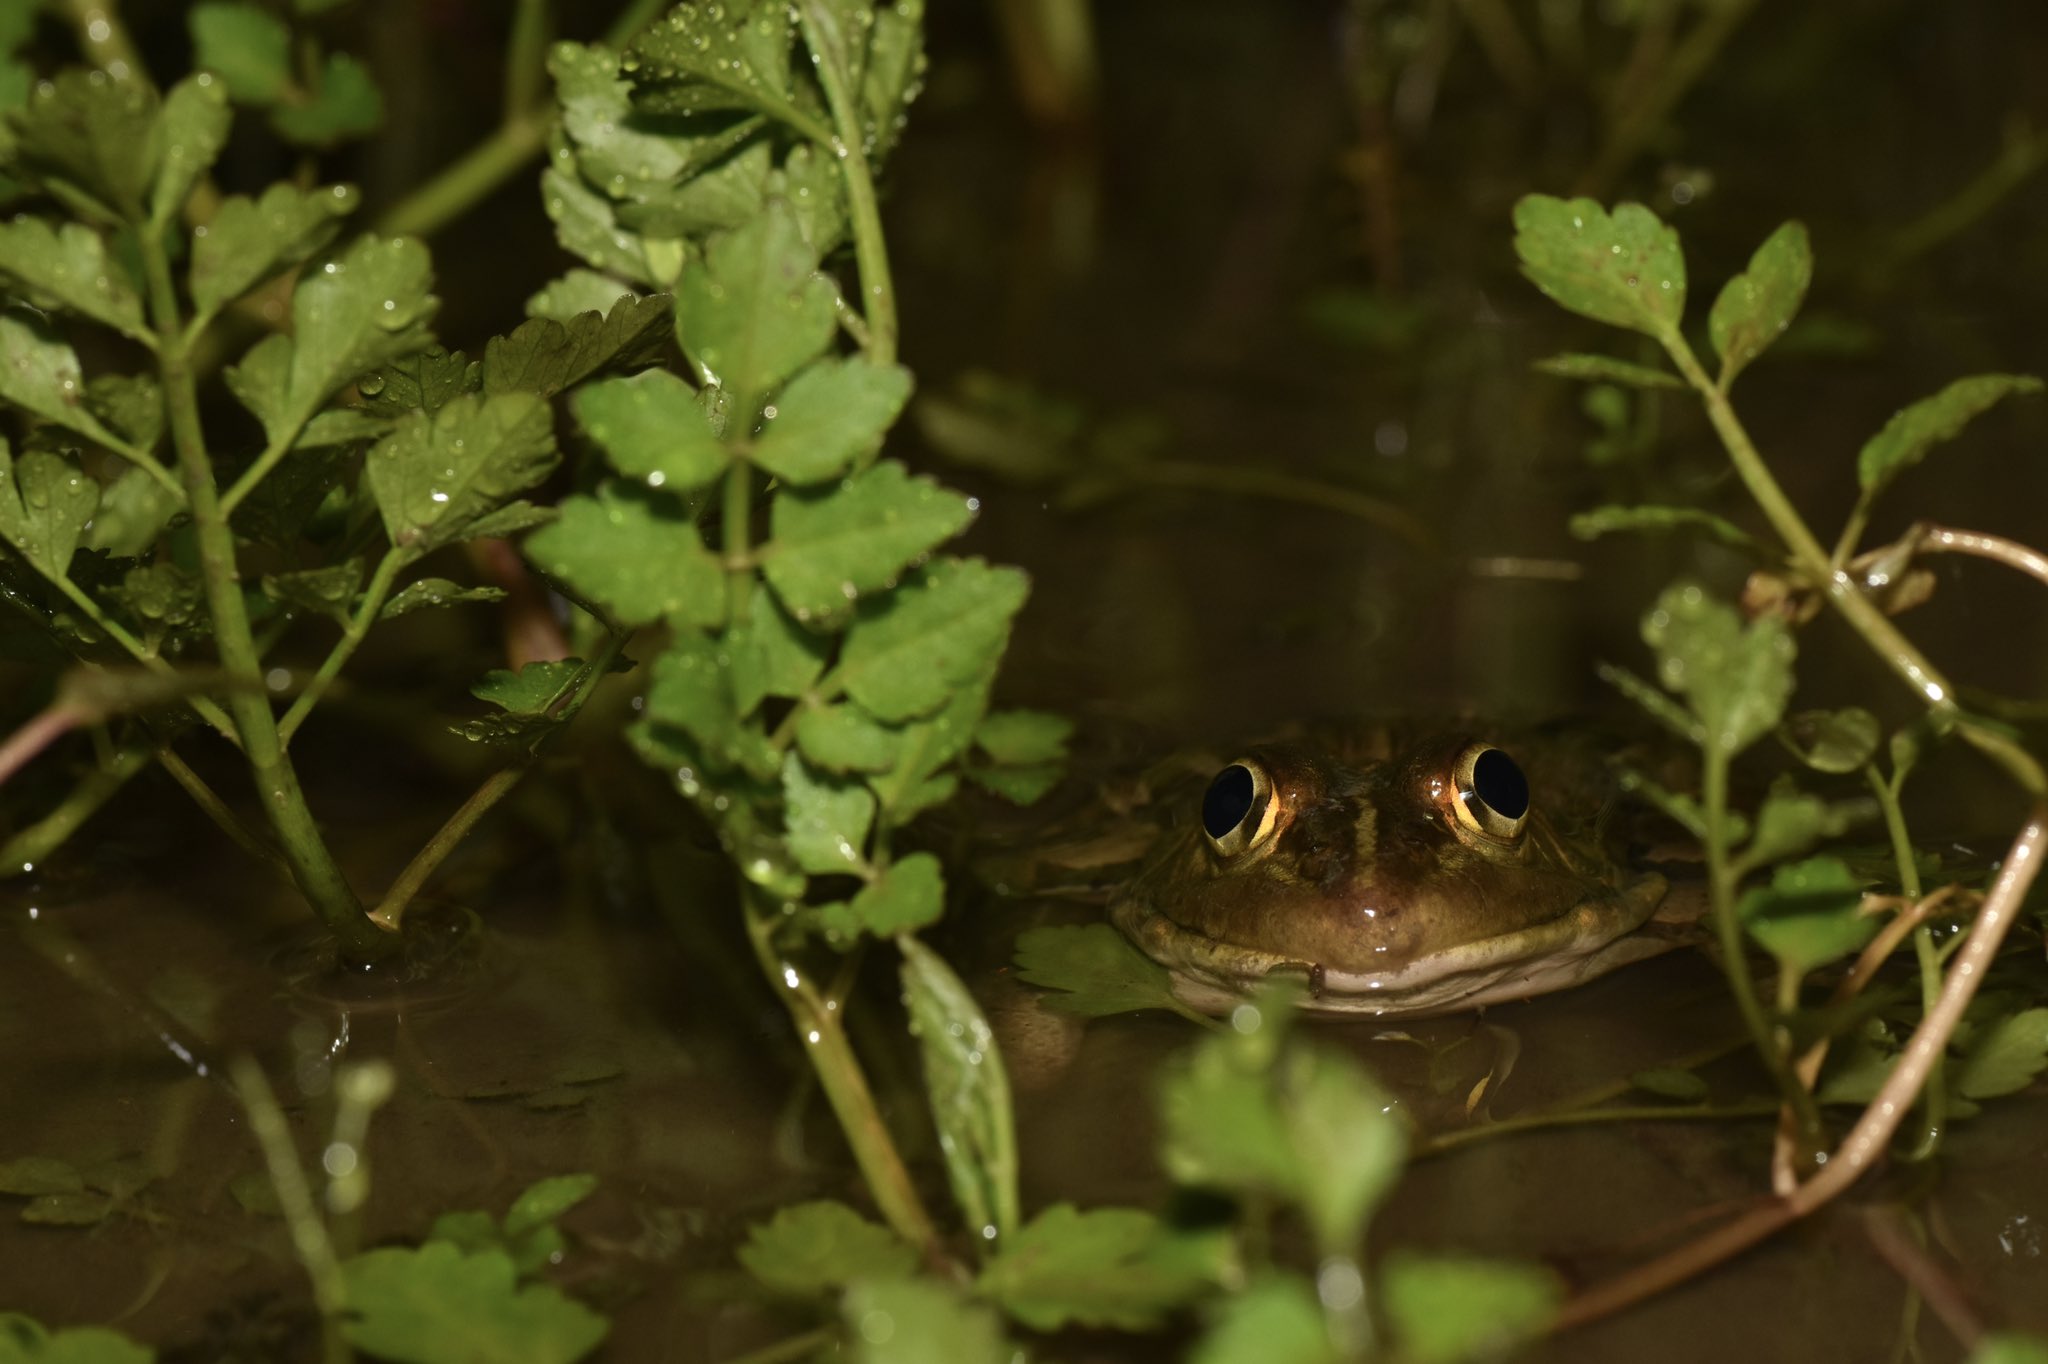 広島大学いきもの会 大きく力強い鳴き声を湿地に響かせる トノサマガエルのオスです 繁殖期のオスは身体が金色がかり まさしくひょうきんな殿様といった様子になります 身近なカエルの代表種でしたが 主な生息 産卵場所であった水田環境の減少や変化